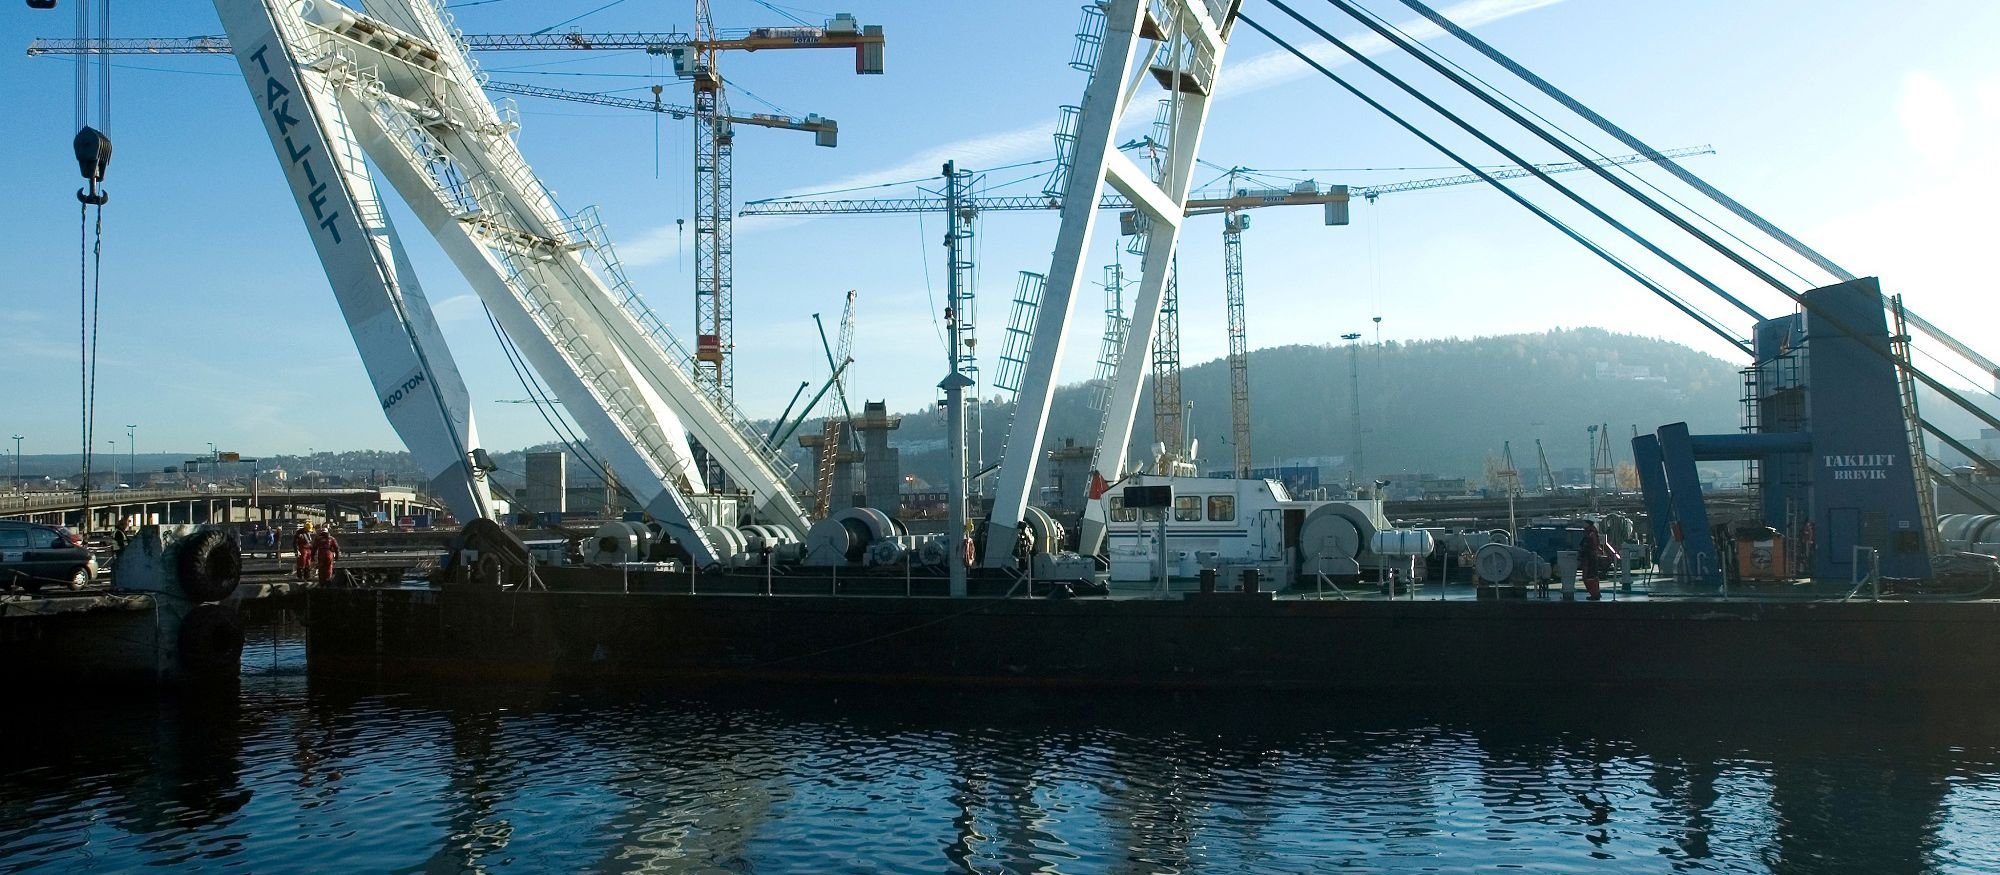 Port with cranes. Photo.